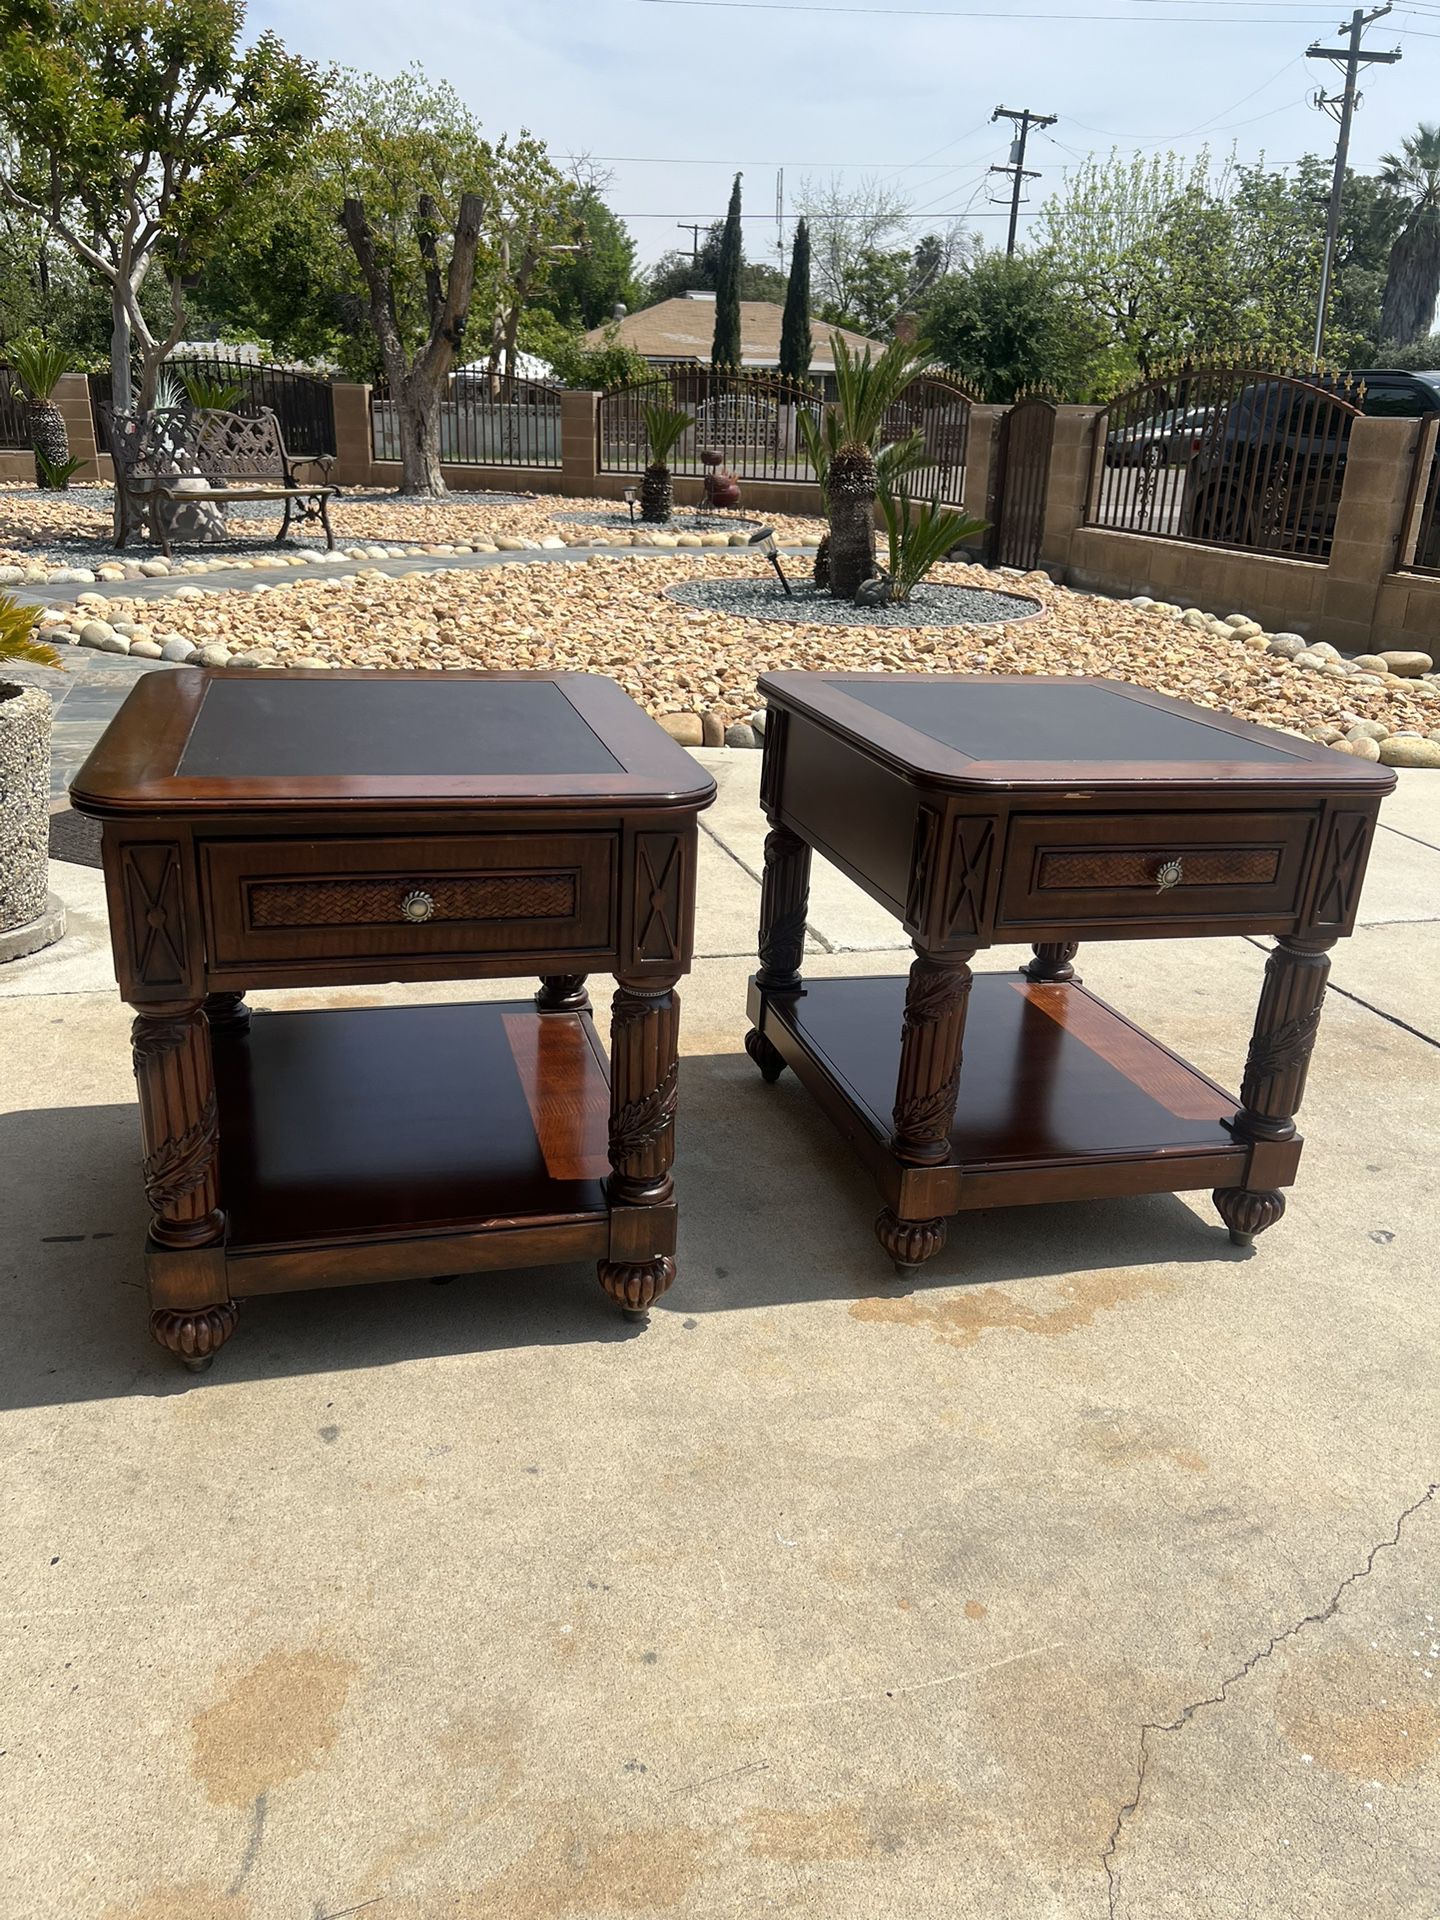 ART Furniture - 2 Side Tables 